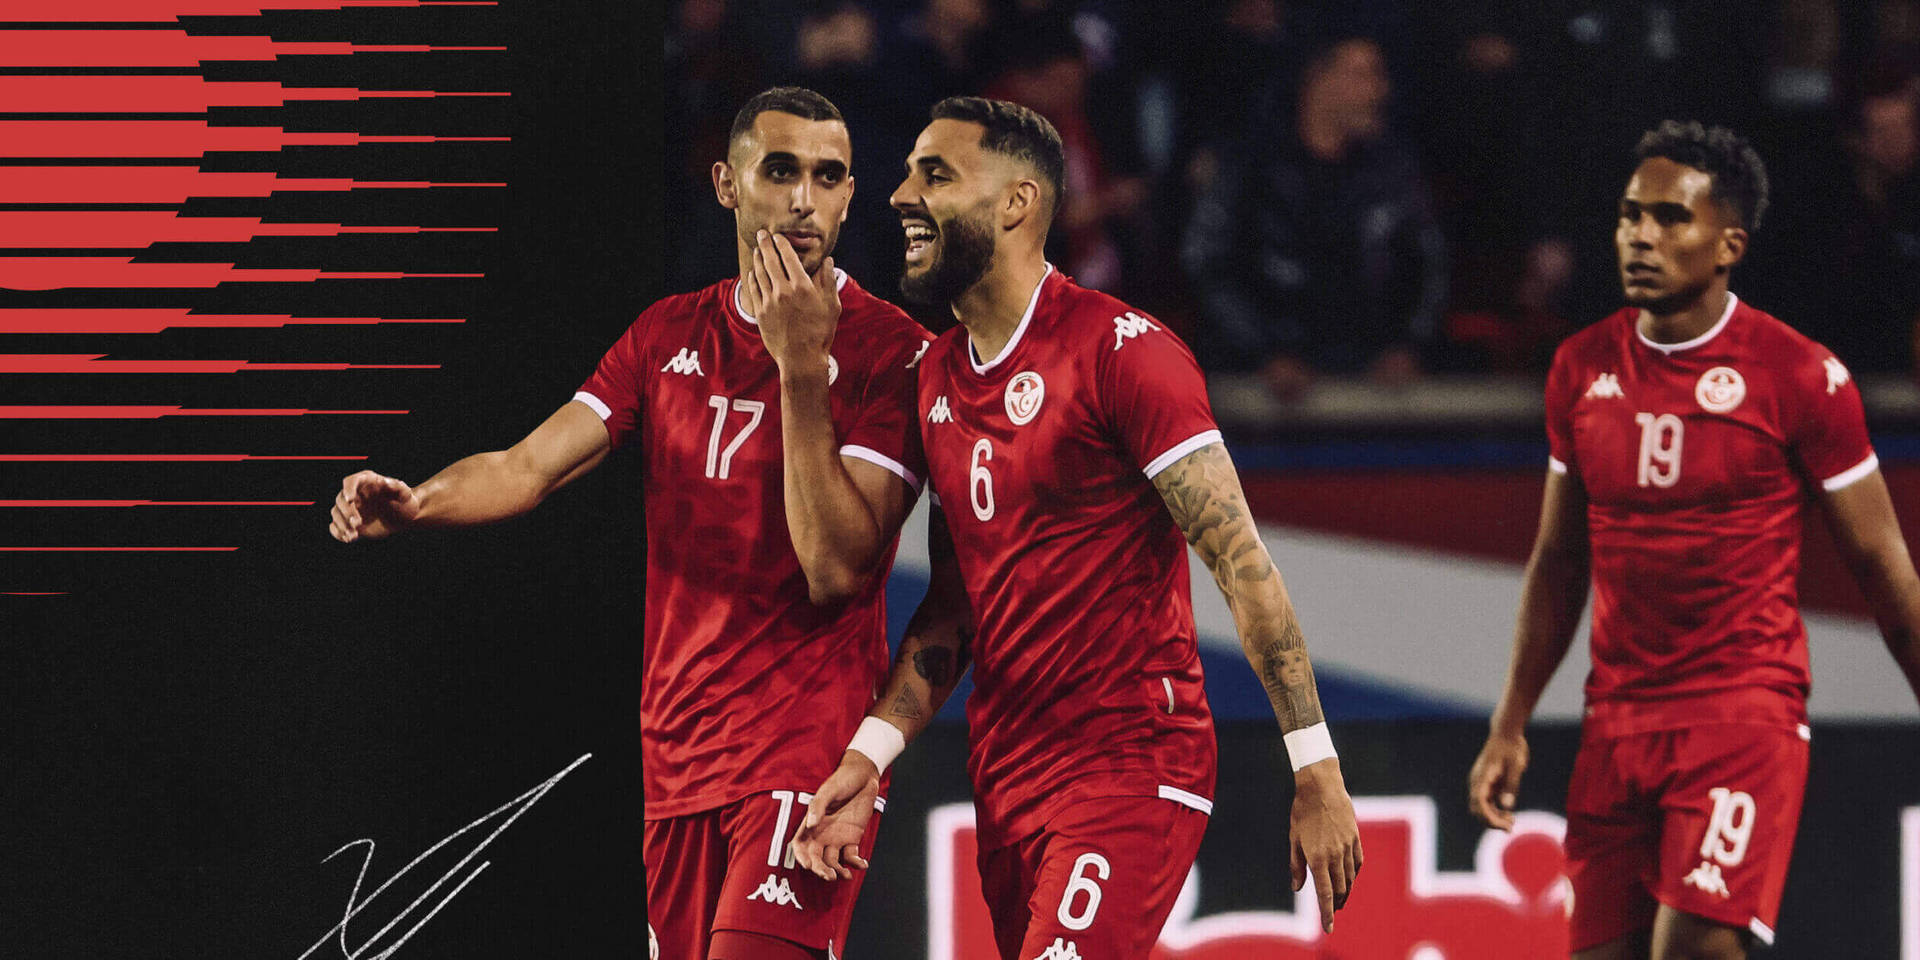 Tunisienslandslagsspelare På Fotbollsplanen. Wallpaper